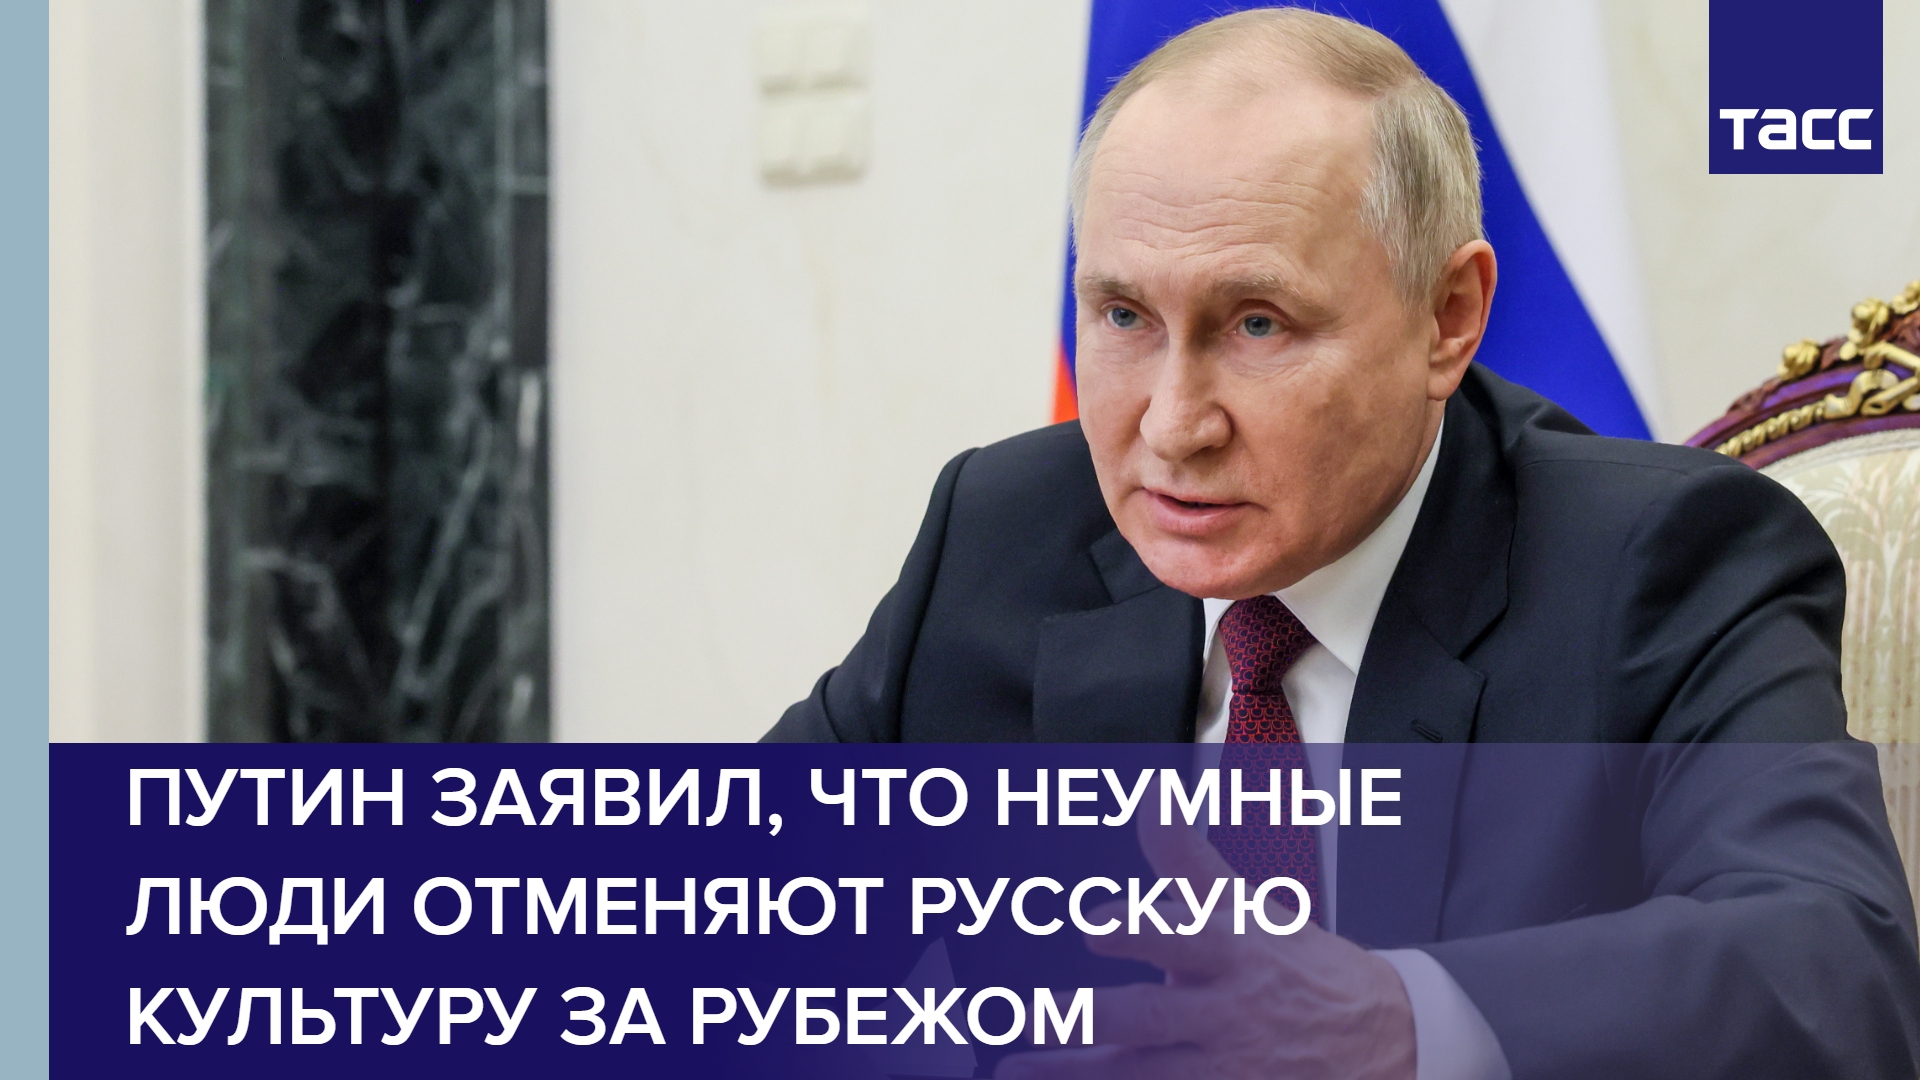 Путин заявил, что неумные люди отменяют русскую культуру за рубежом #shorts